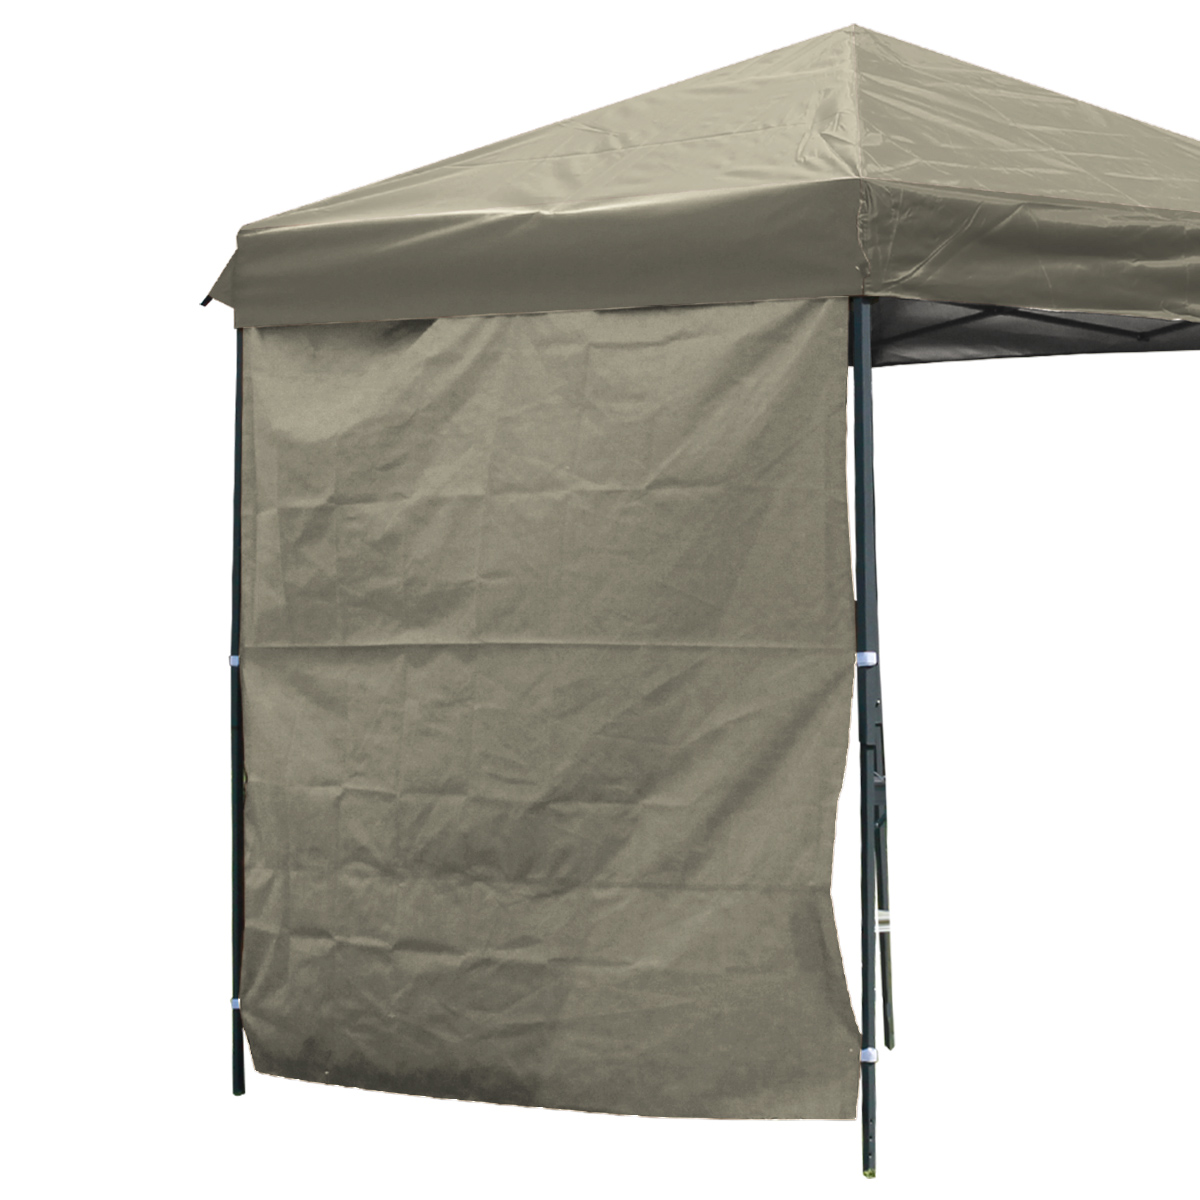 タープテント 2m×2m用 サイドシートのみ ワンタッチ サンシェード スチール 日よけ 紫外線防止 UVカット MERMONT